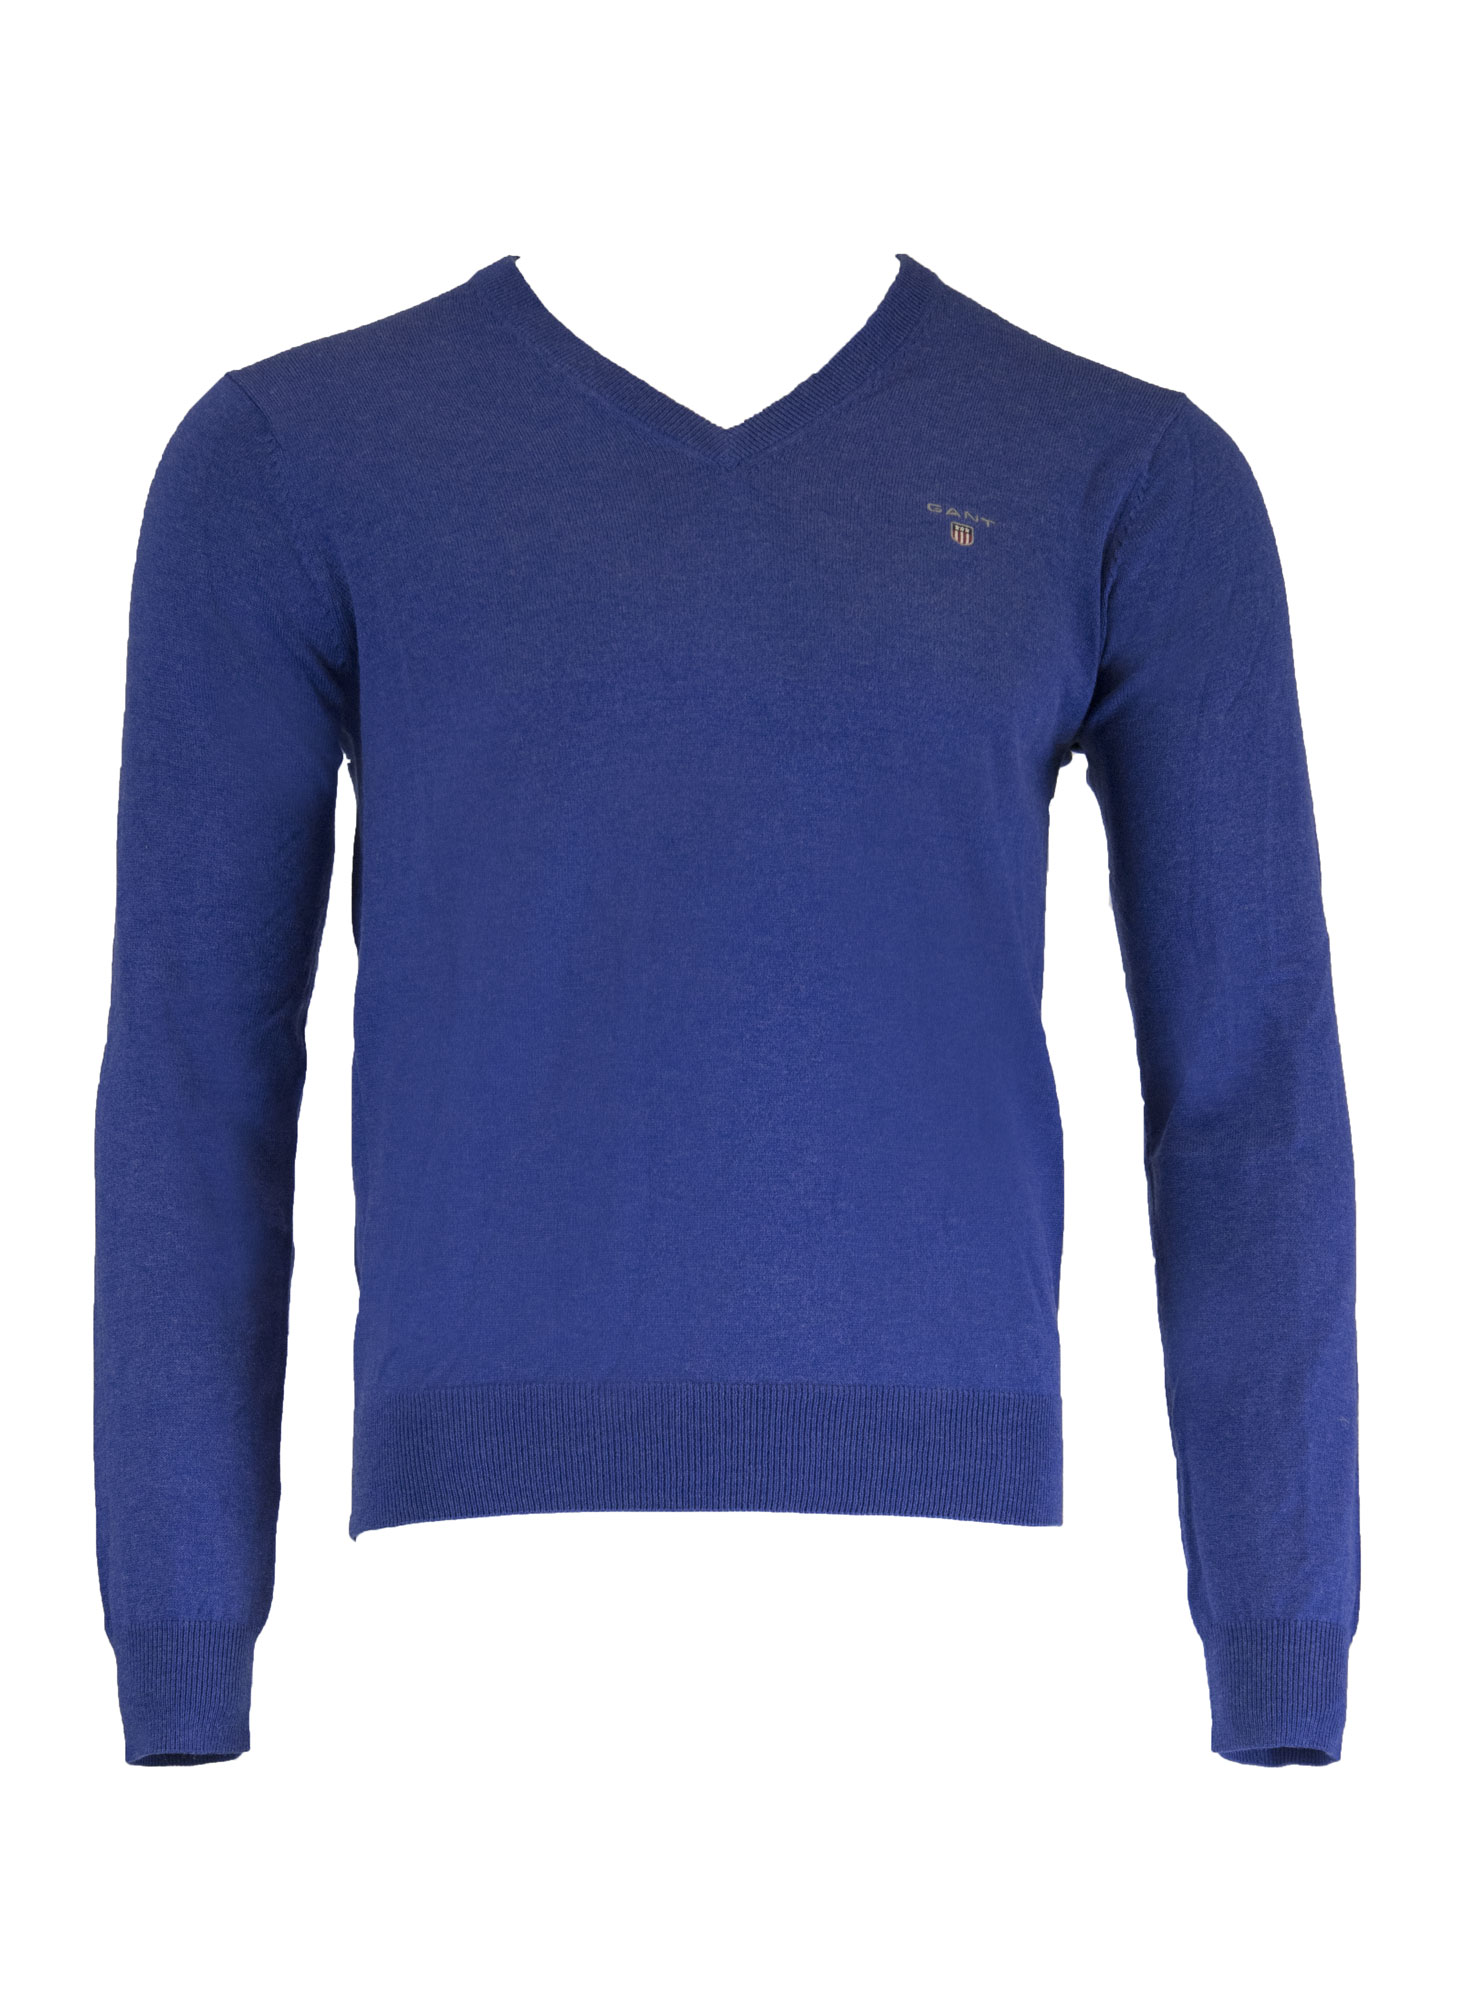 GANT Men's Royal Blue Melange Cotton Wool V-Neck 83102 Size M $125 NWT ...